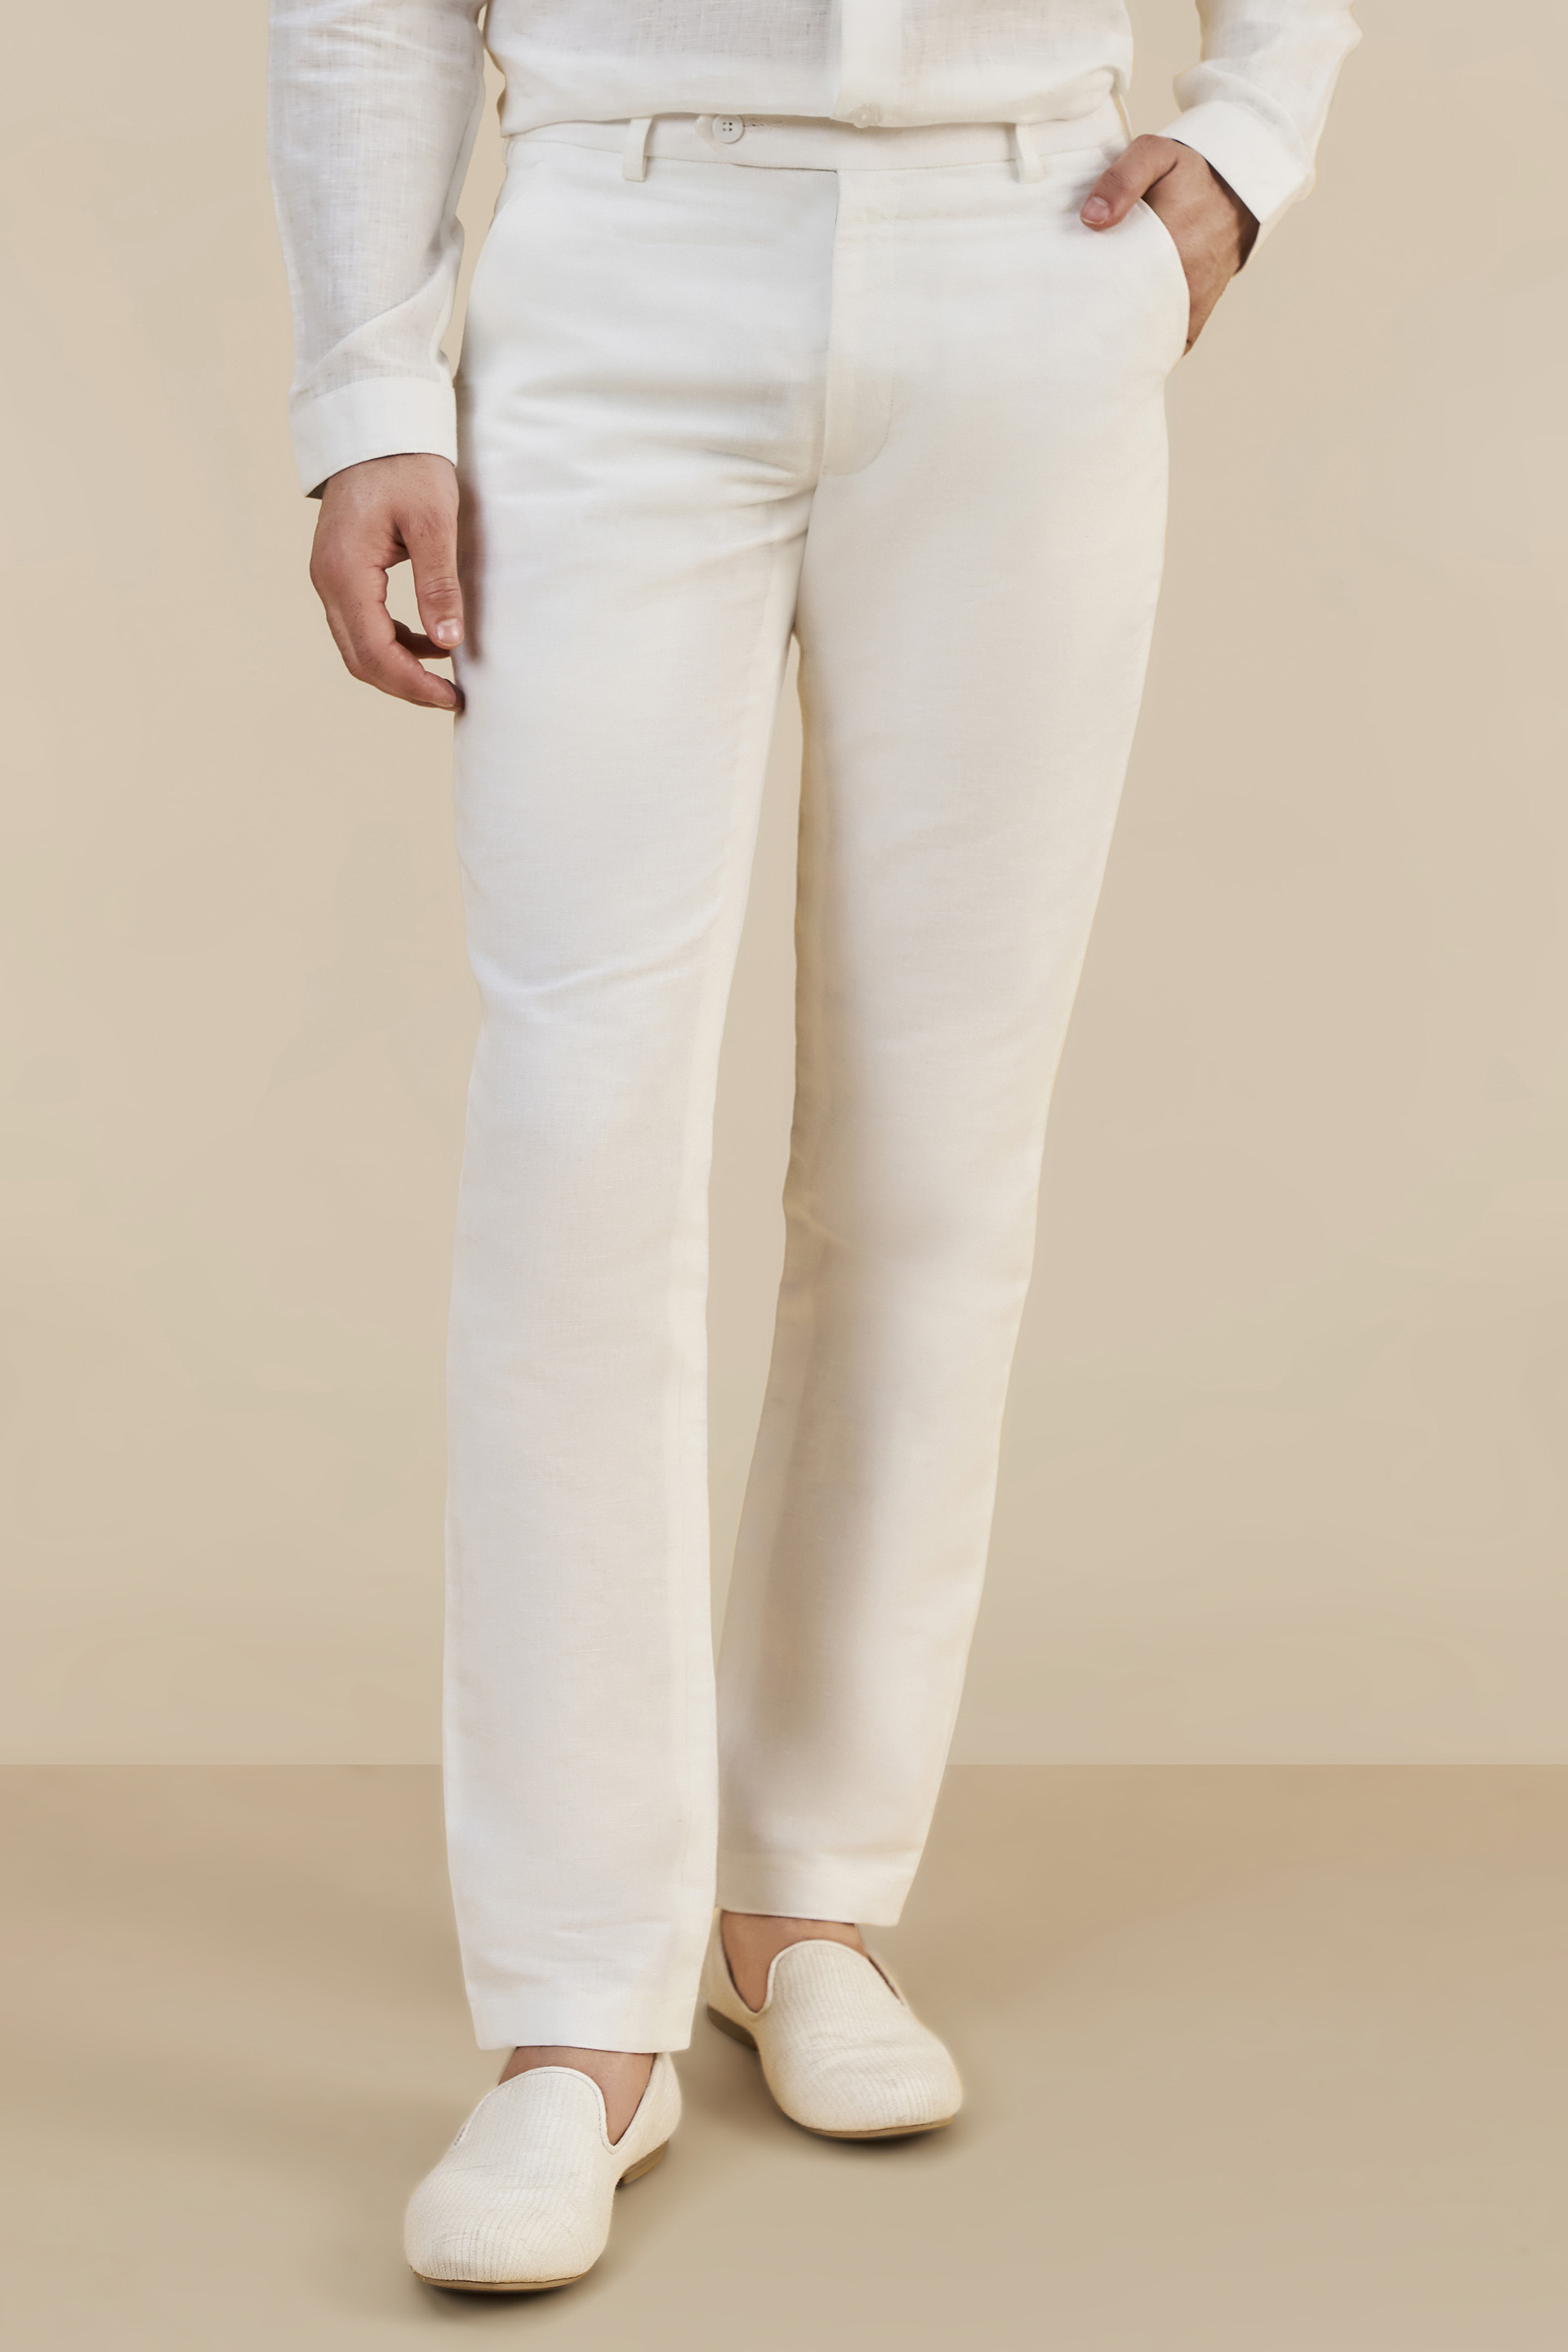 Lauren Ralph Lauren Adriarie Linen Trousers, White, 8